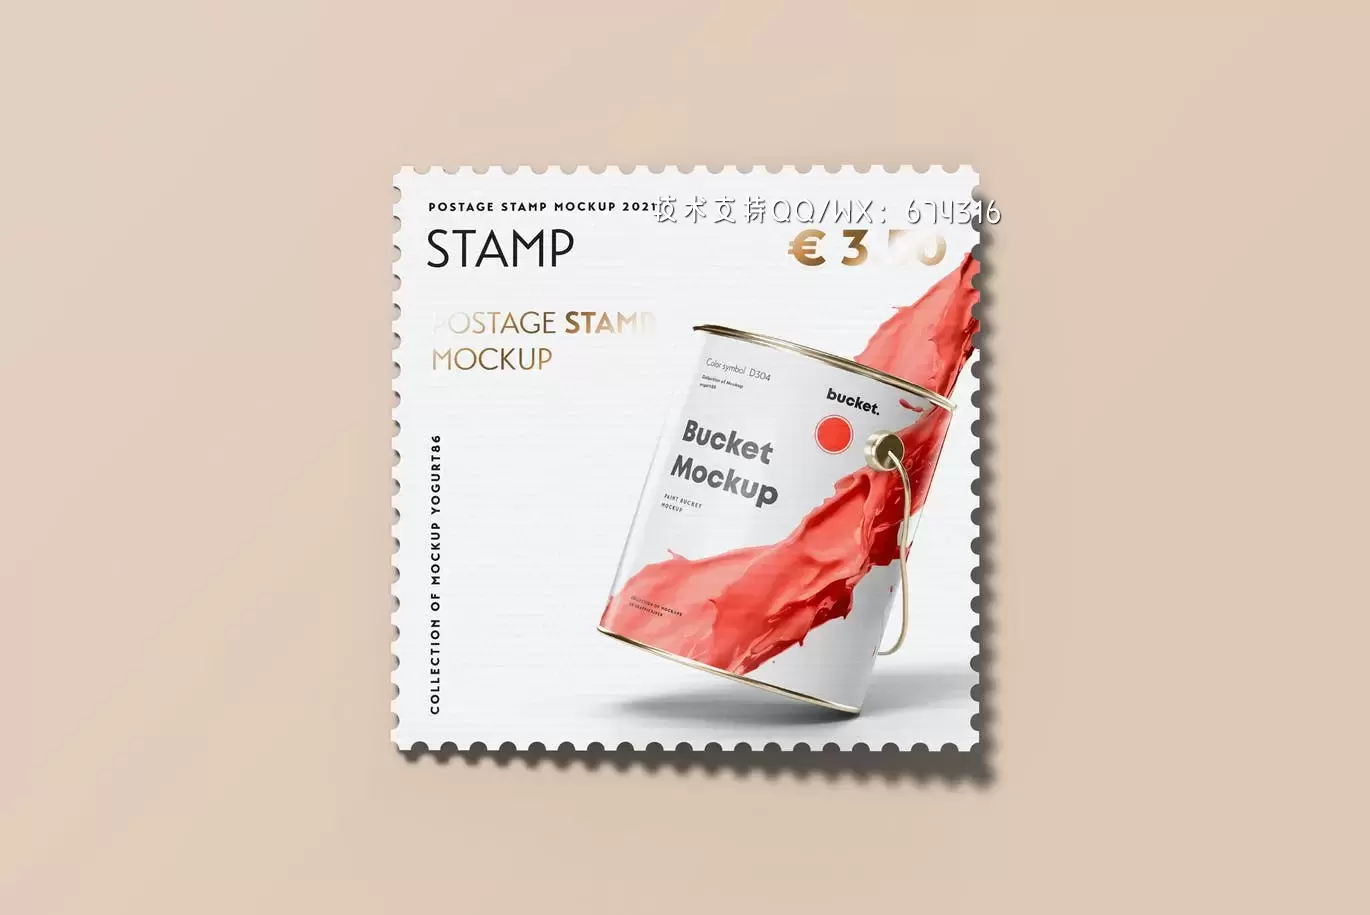 时尚高端专业的高品质邮票设计VI样机展示模型mockups免费下载插图14